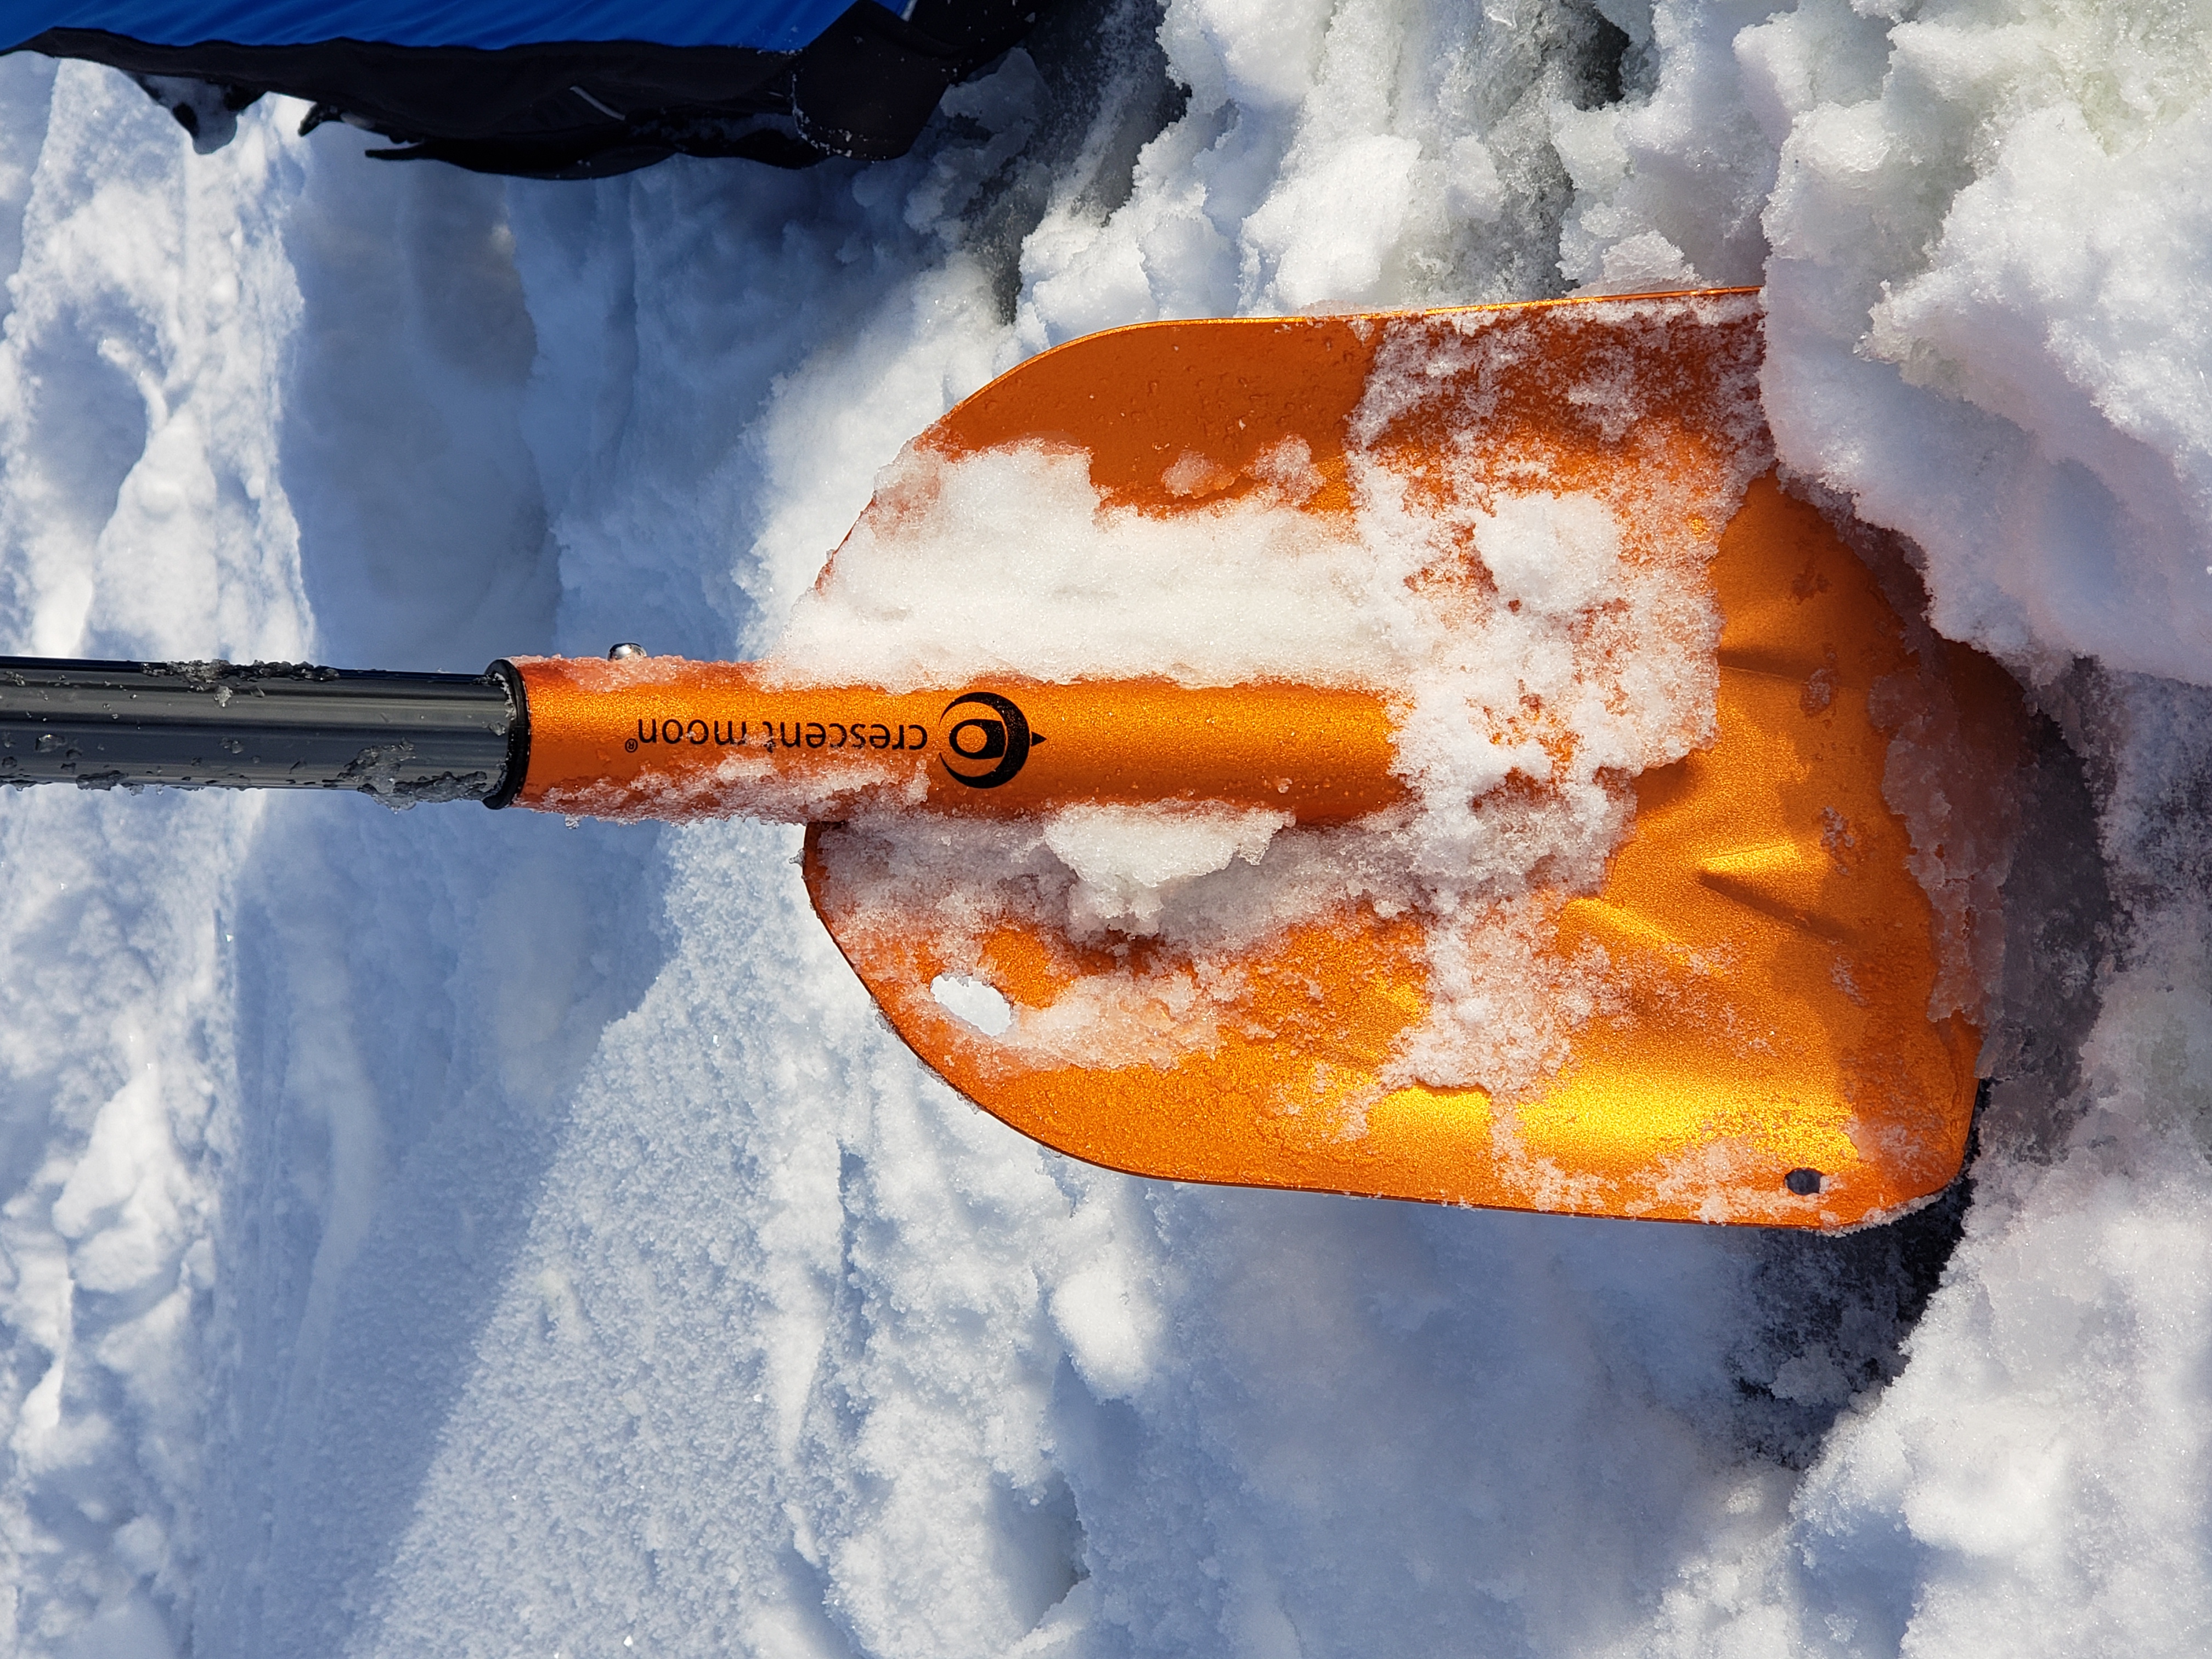 Best shovel for ice fishing